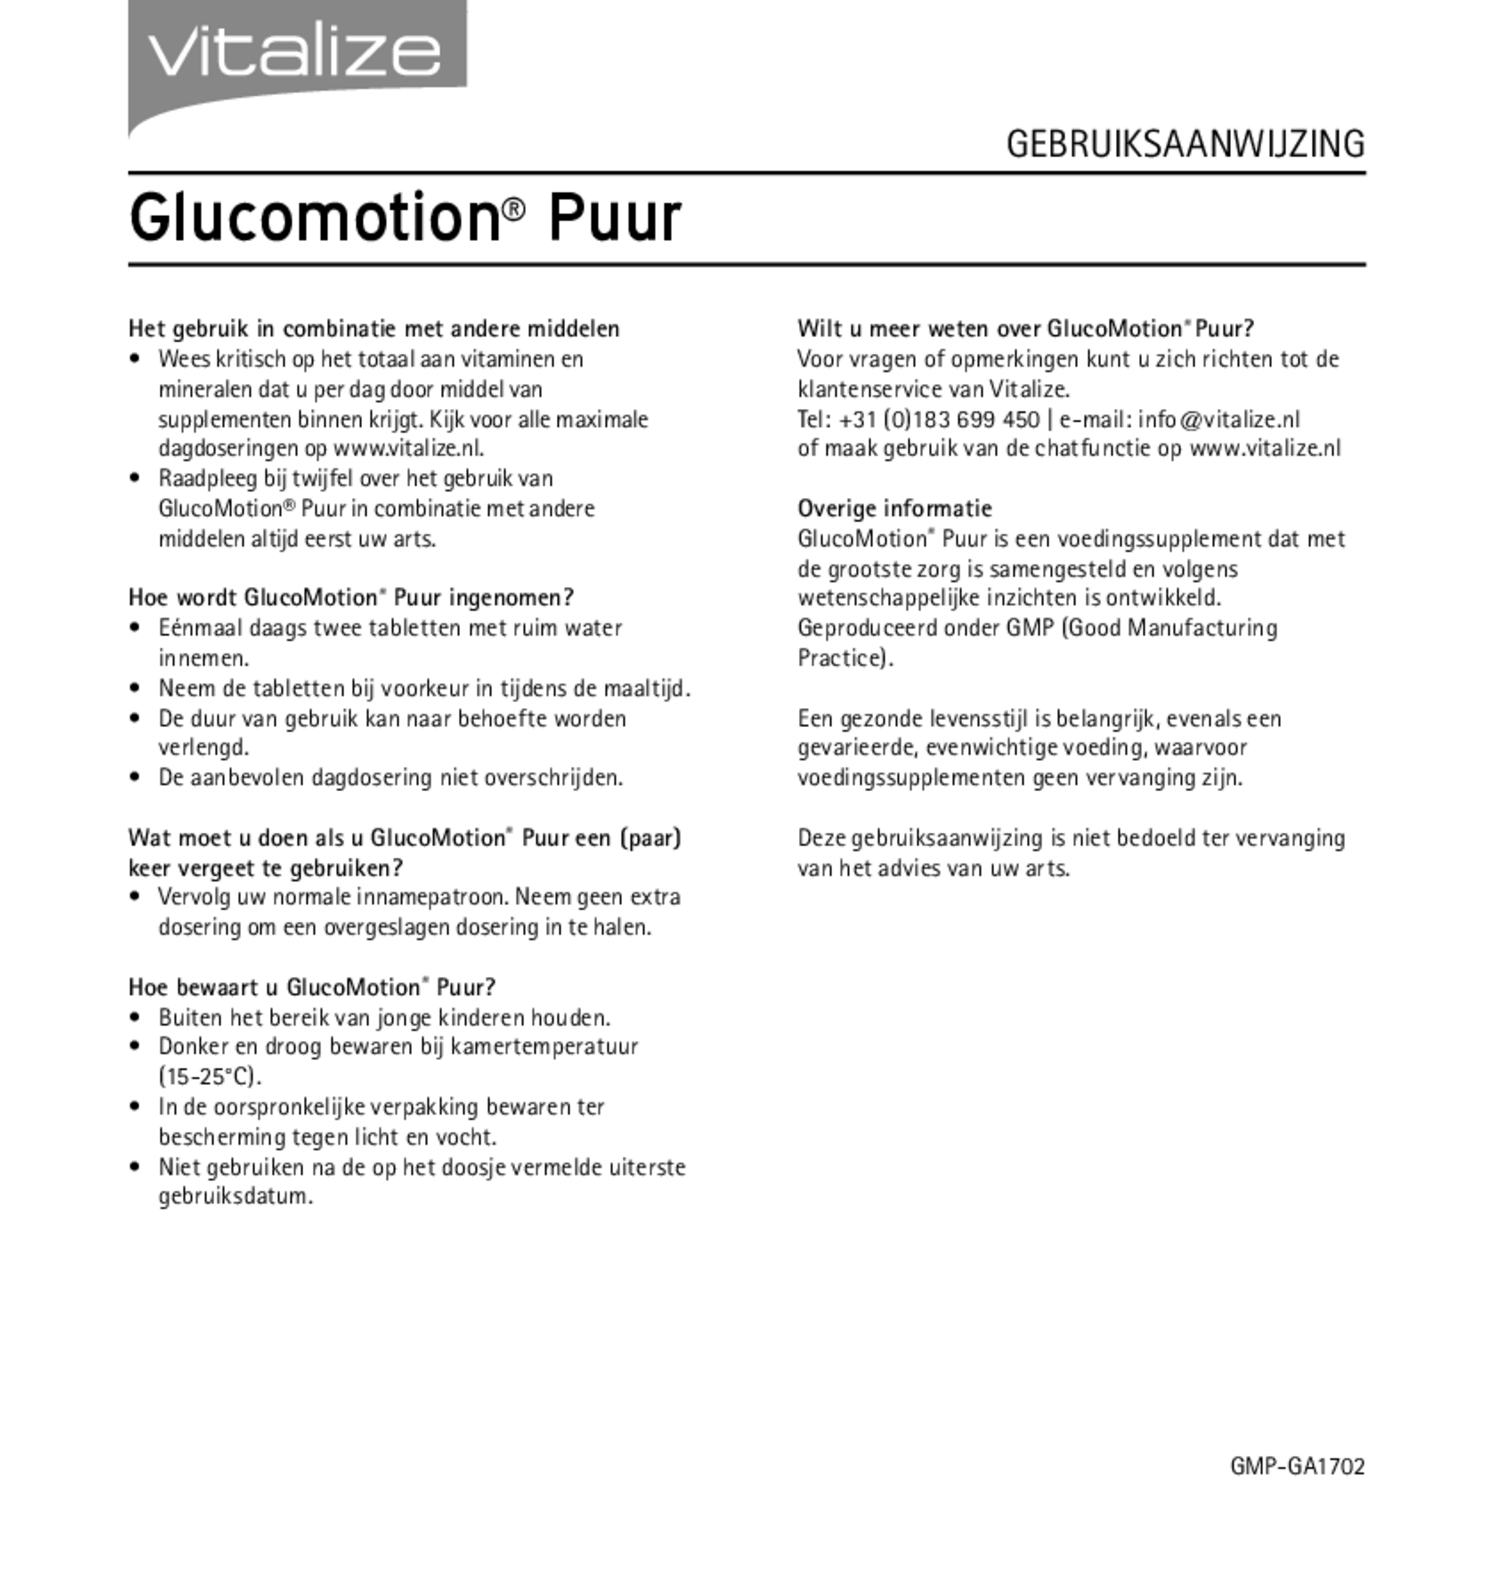 GlucoMotion Puur Tabletten afbeelding van document #2, gebruiksaanwijzing